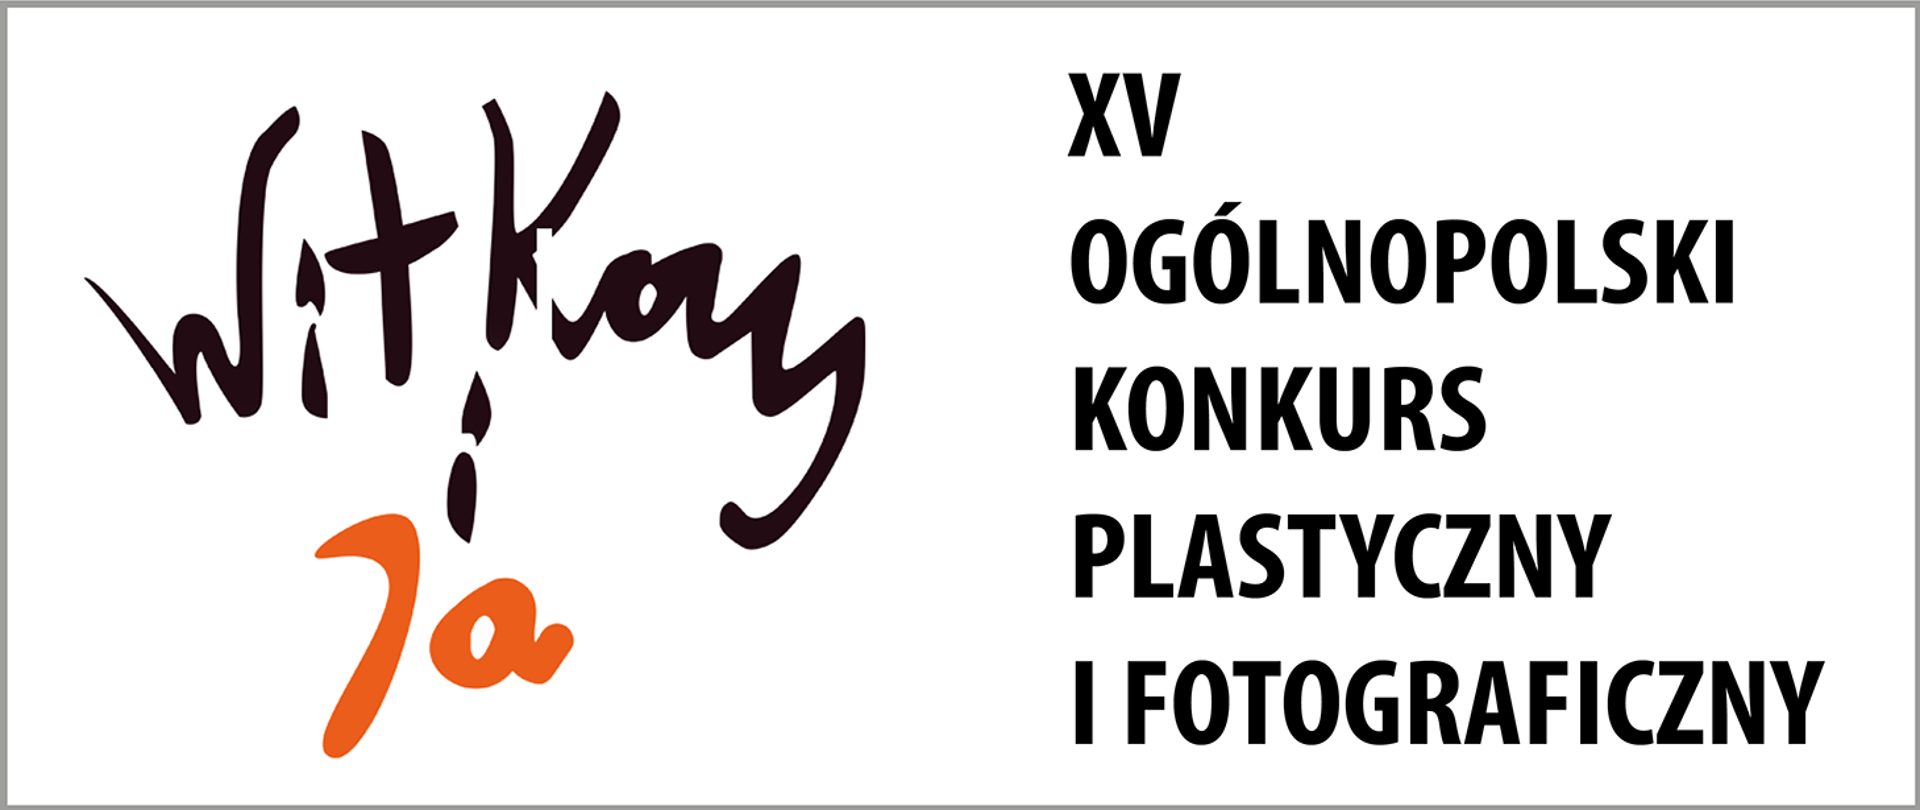 Witkacy i Ja - Ogólnopolski Konkurs Plastyczny i Fotograficzny